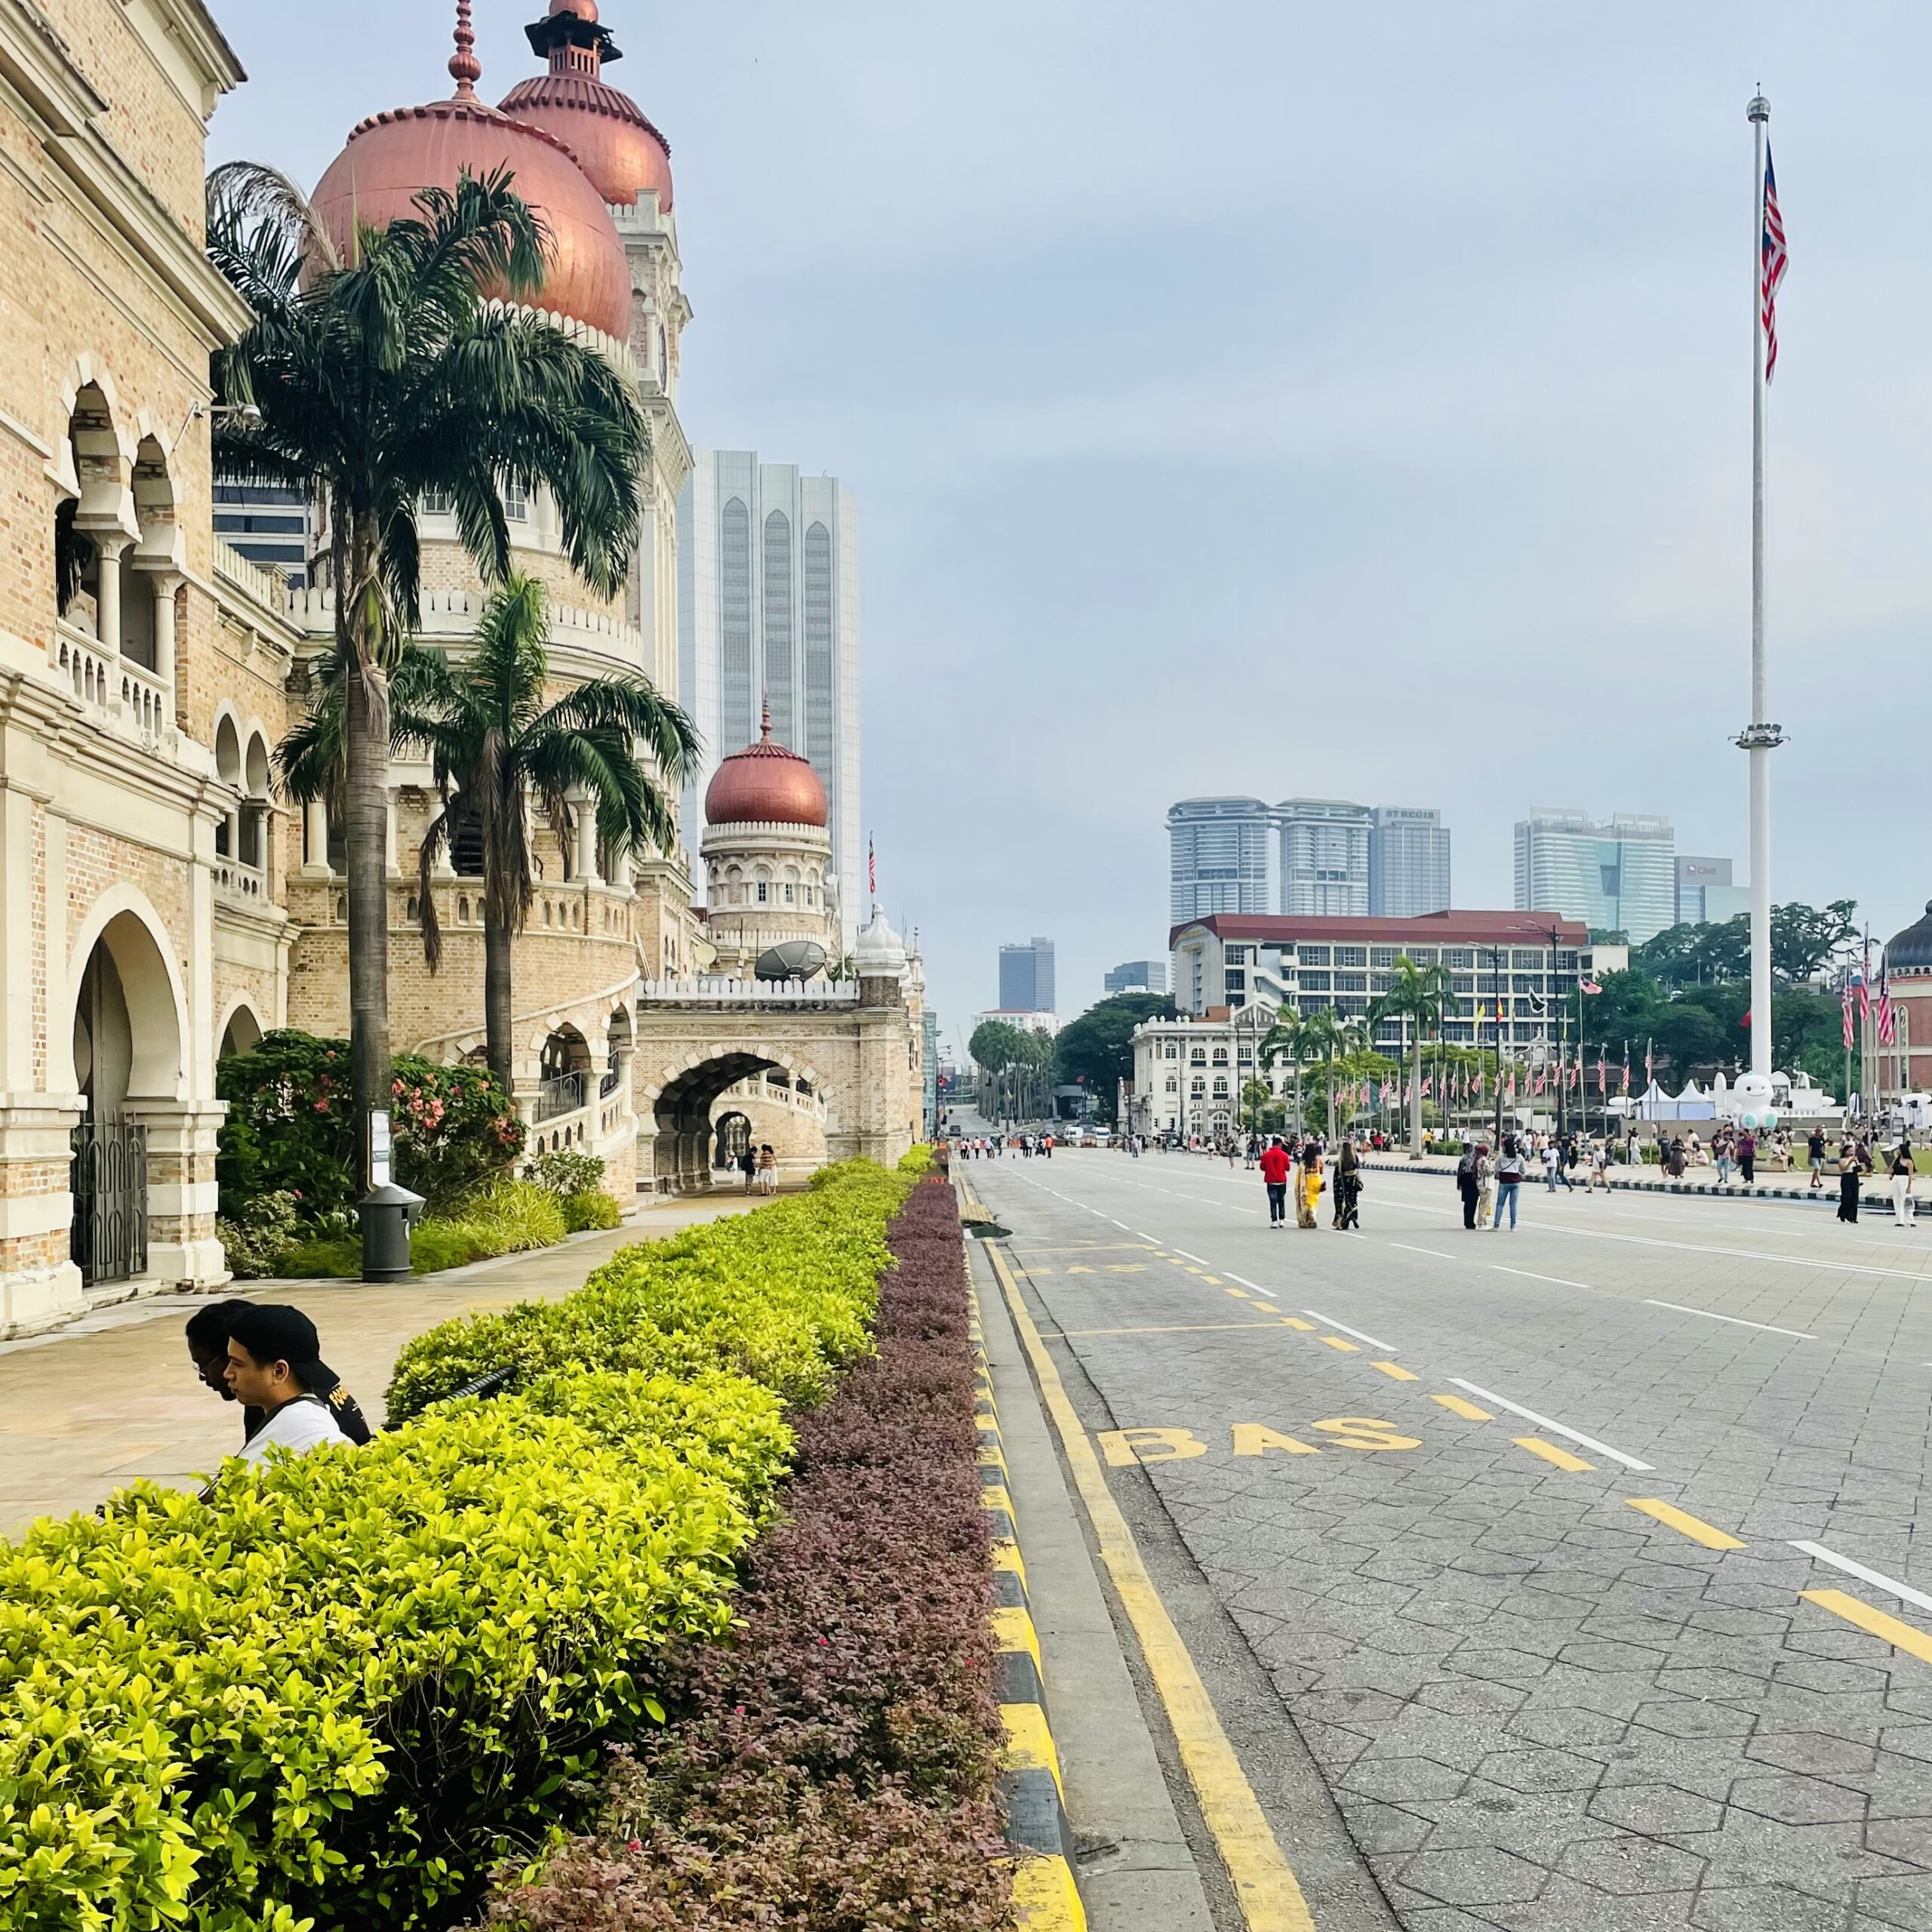 Palais du Sultan Abdul Samad sur le Merdeka Square à Kuala Lumpur en Malaisie